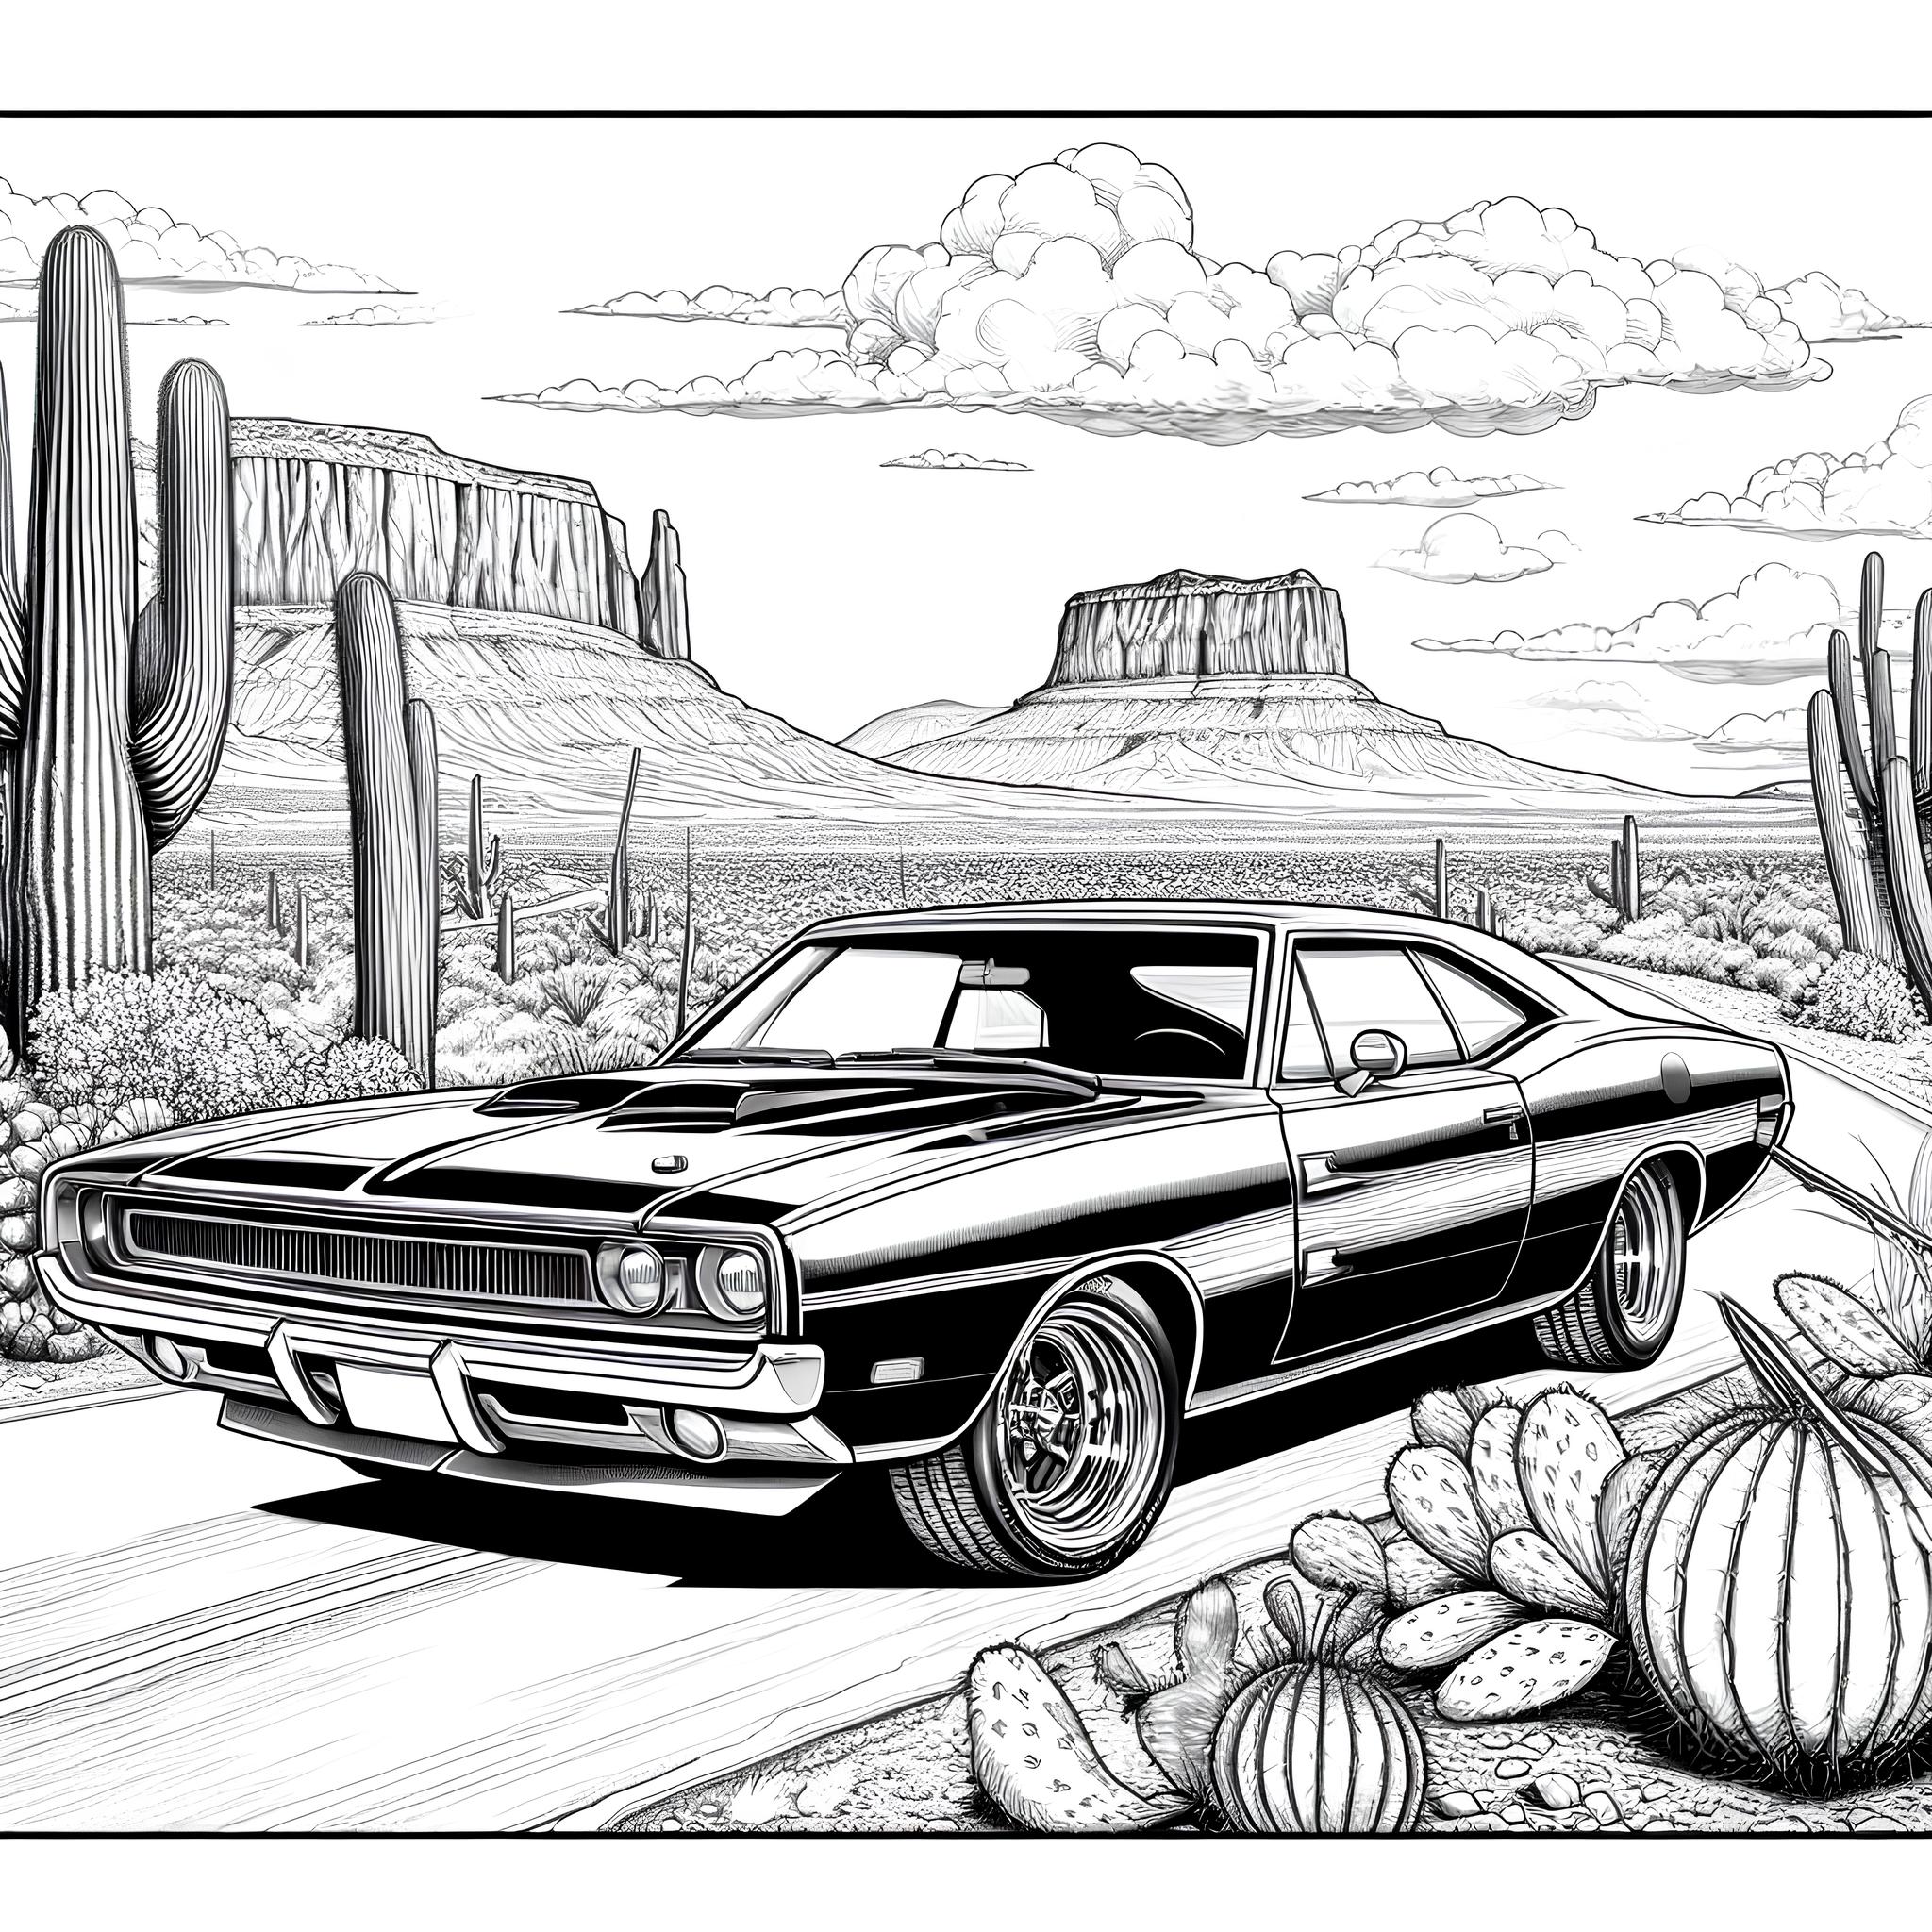 Ausmalbild: Auto in der Wüste